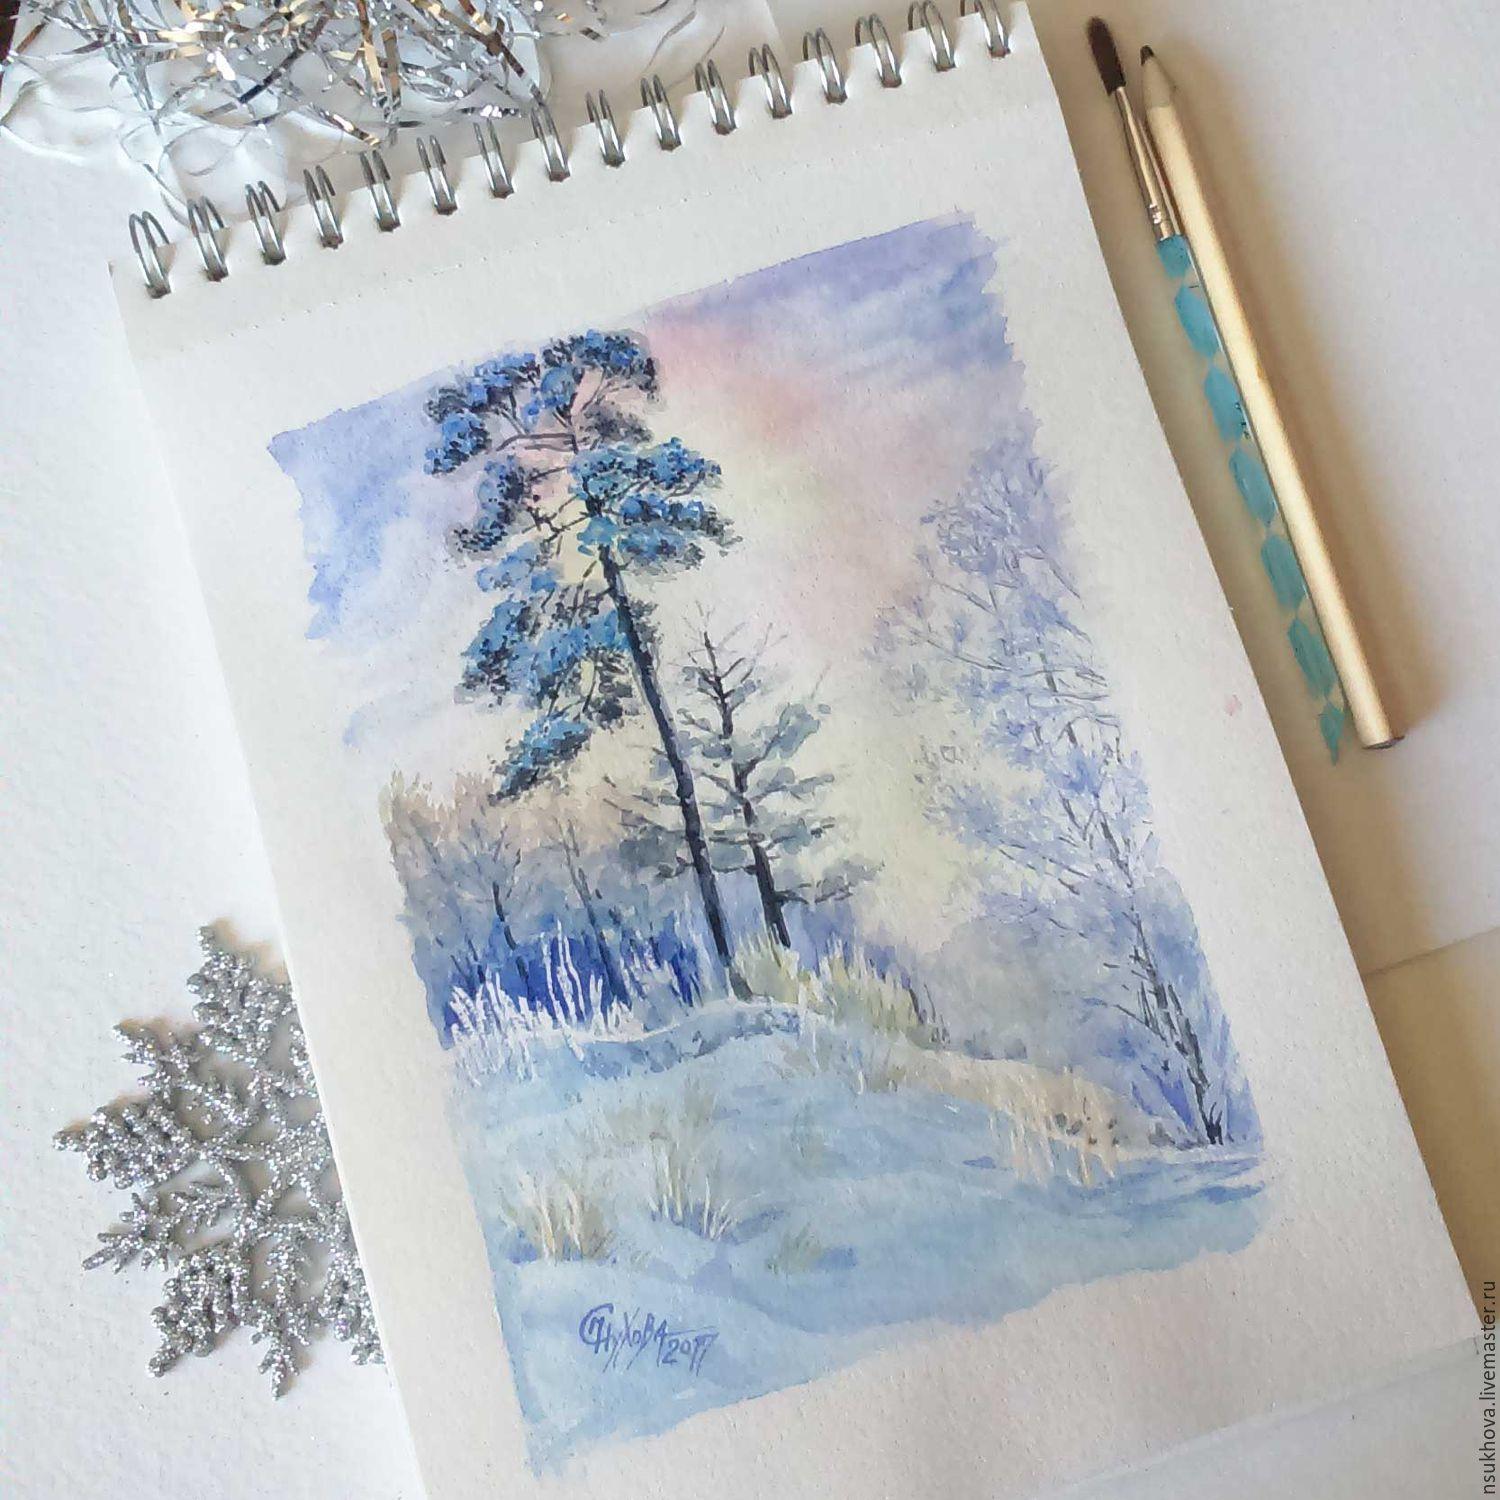 Купить Акварель \"Зимняя тишина\" - голубой, пейзаж акварелью, пейзаж  недорого, зима в лесу, зима | Акварель, Картины, Акварельные иллюстрации